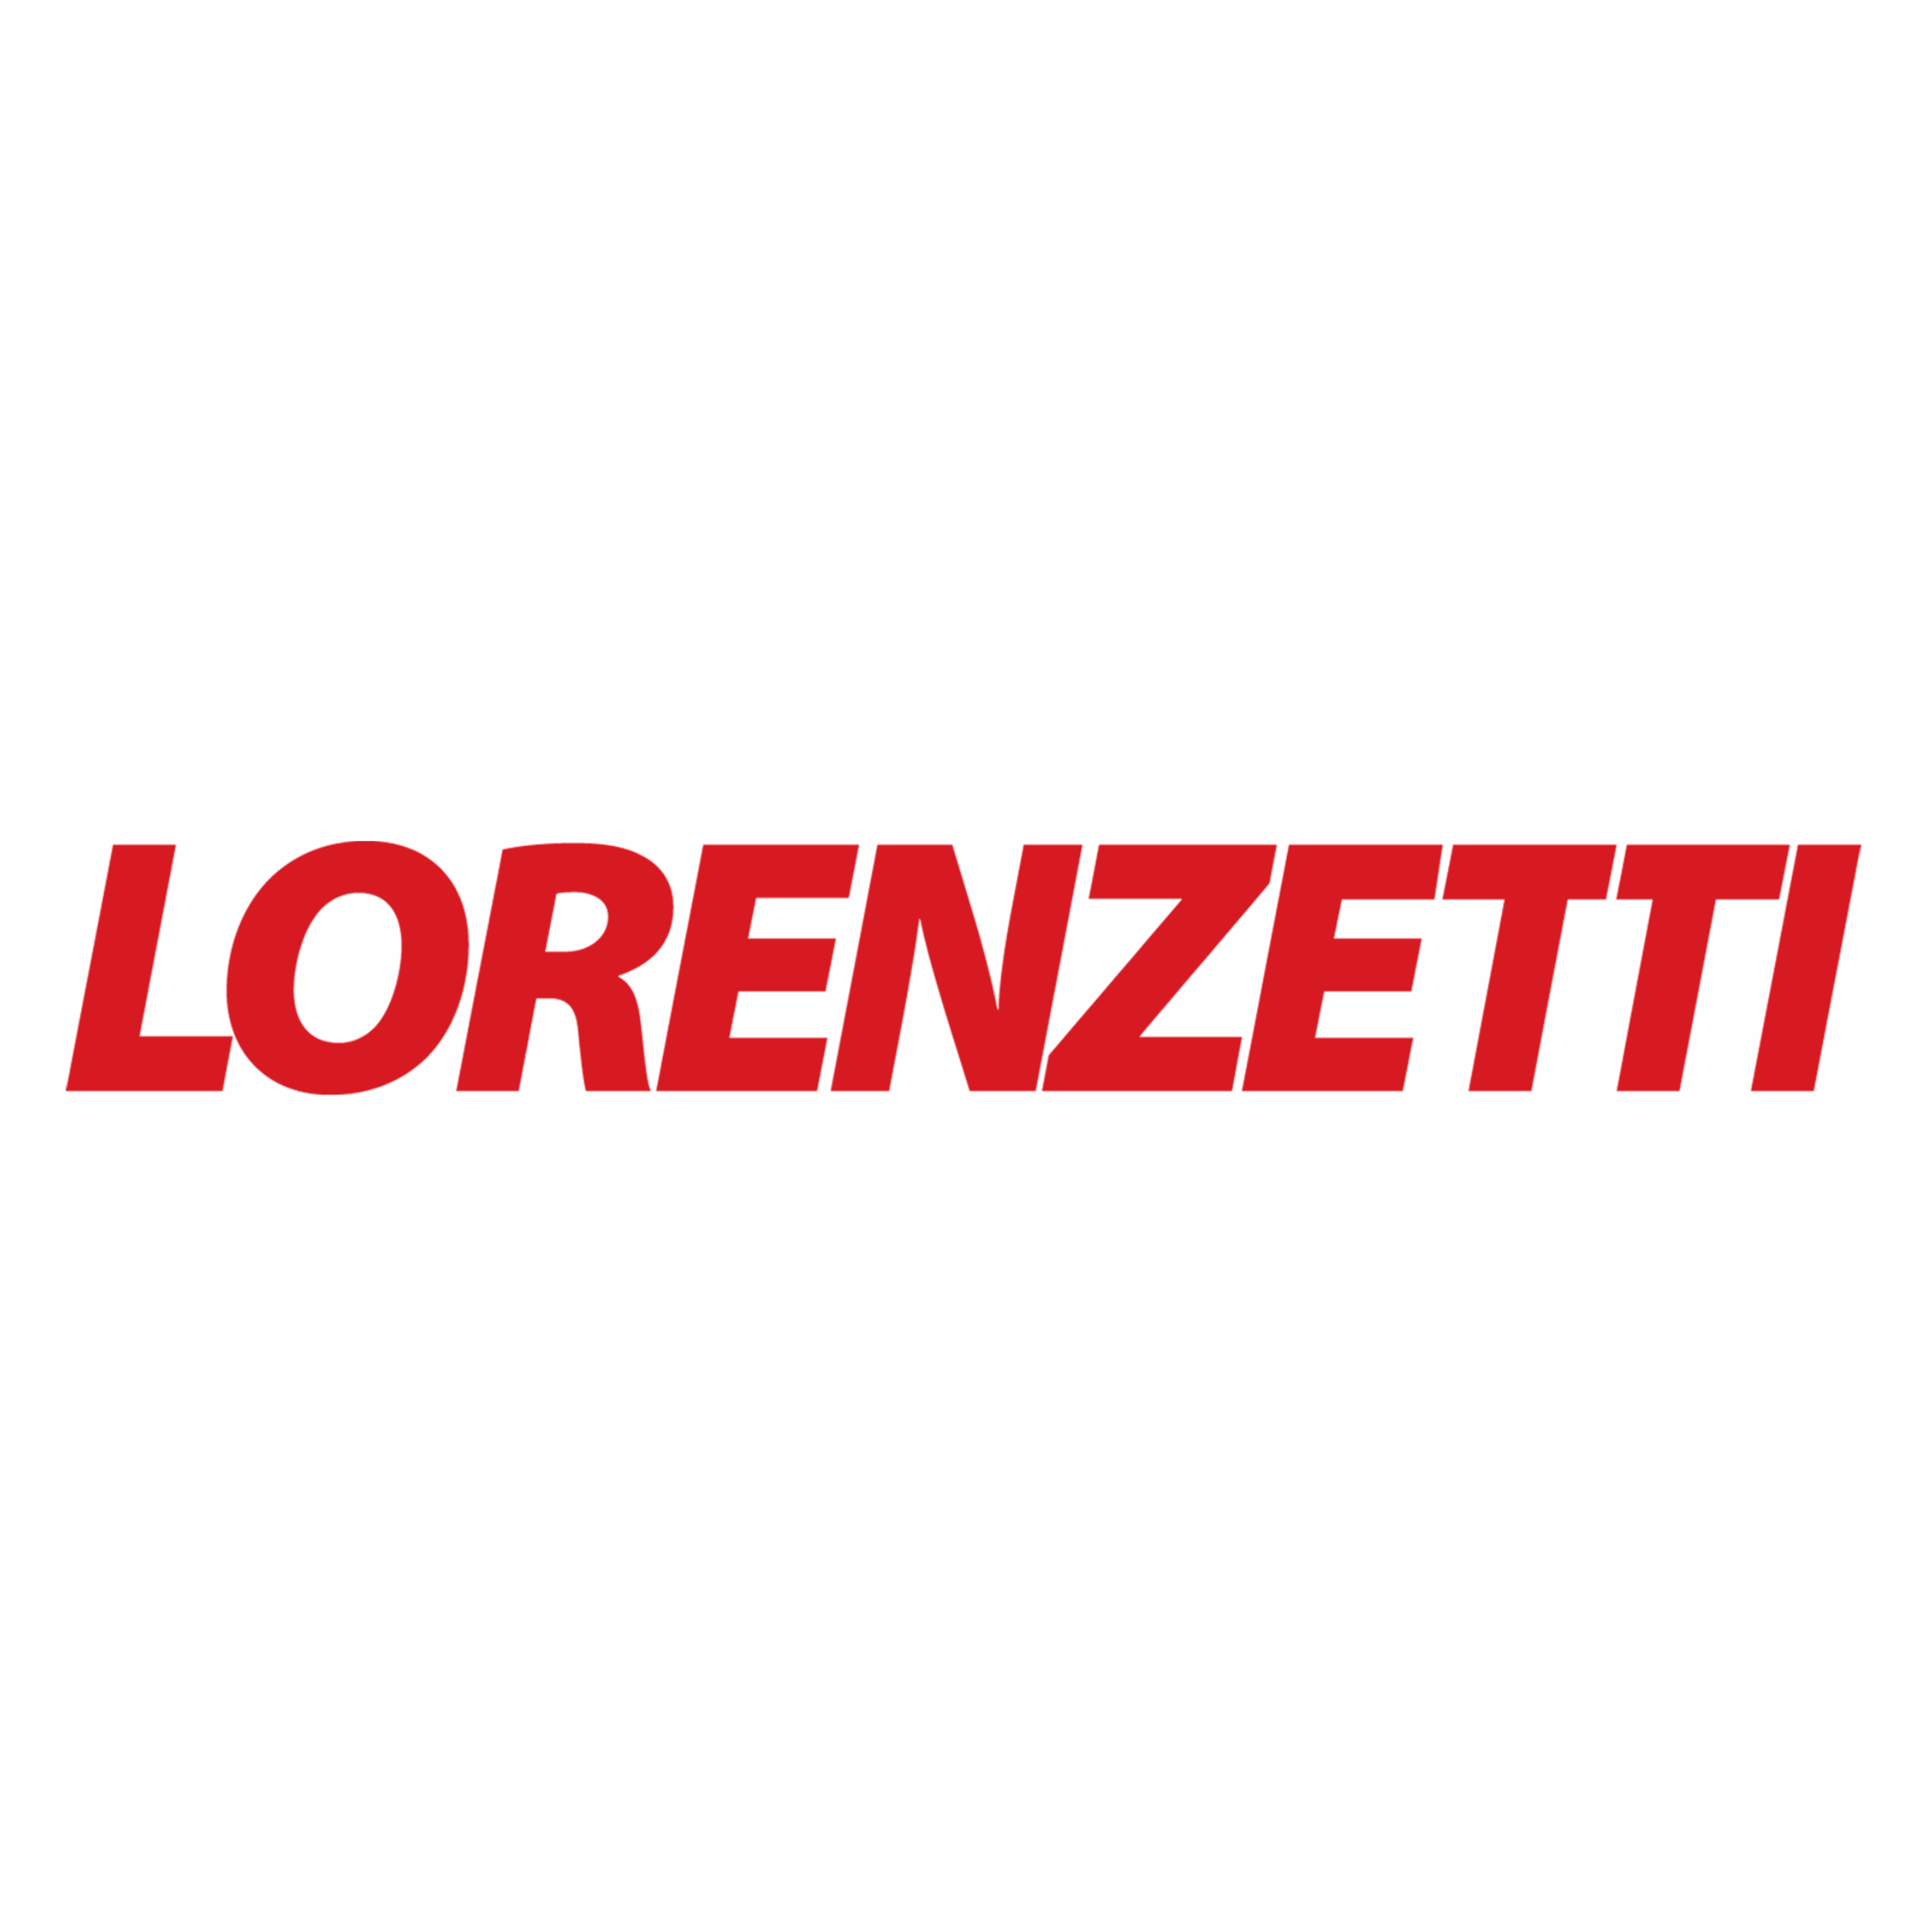 Destaque marca lorenzetti abril